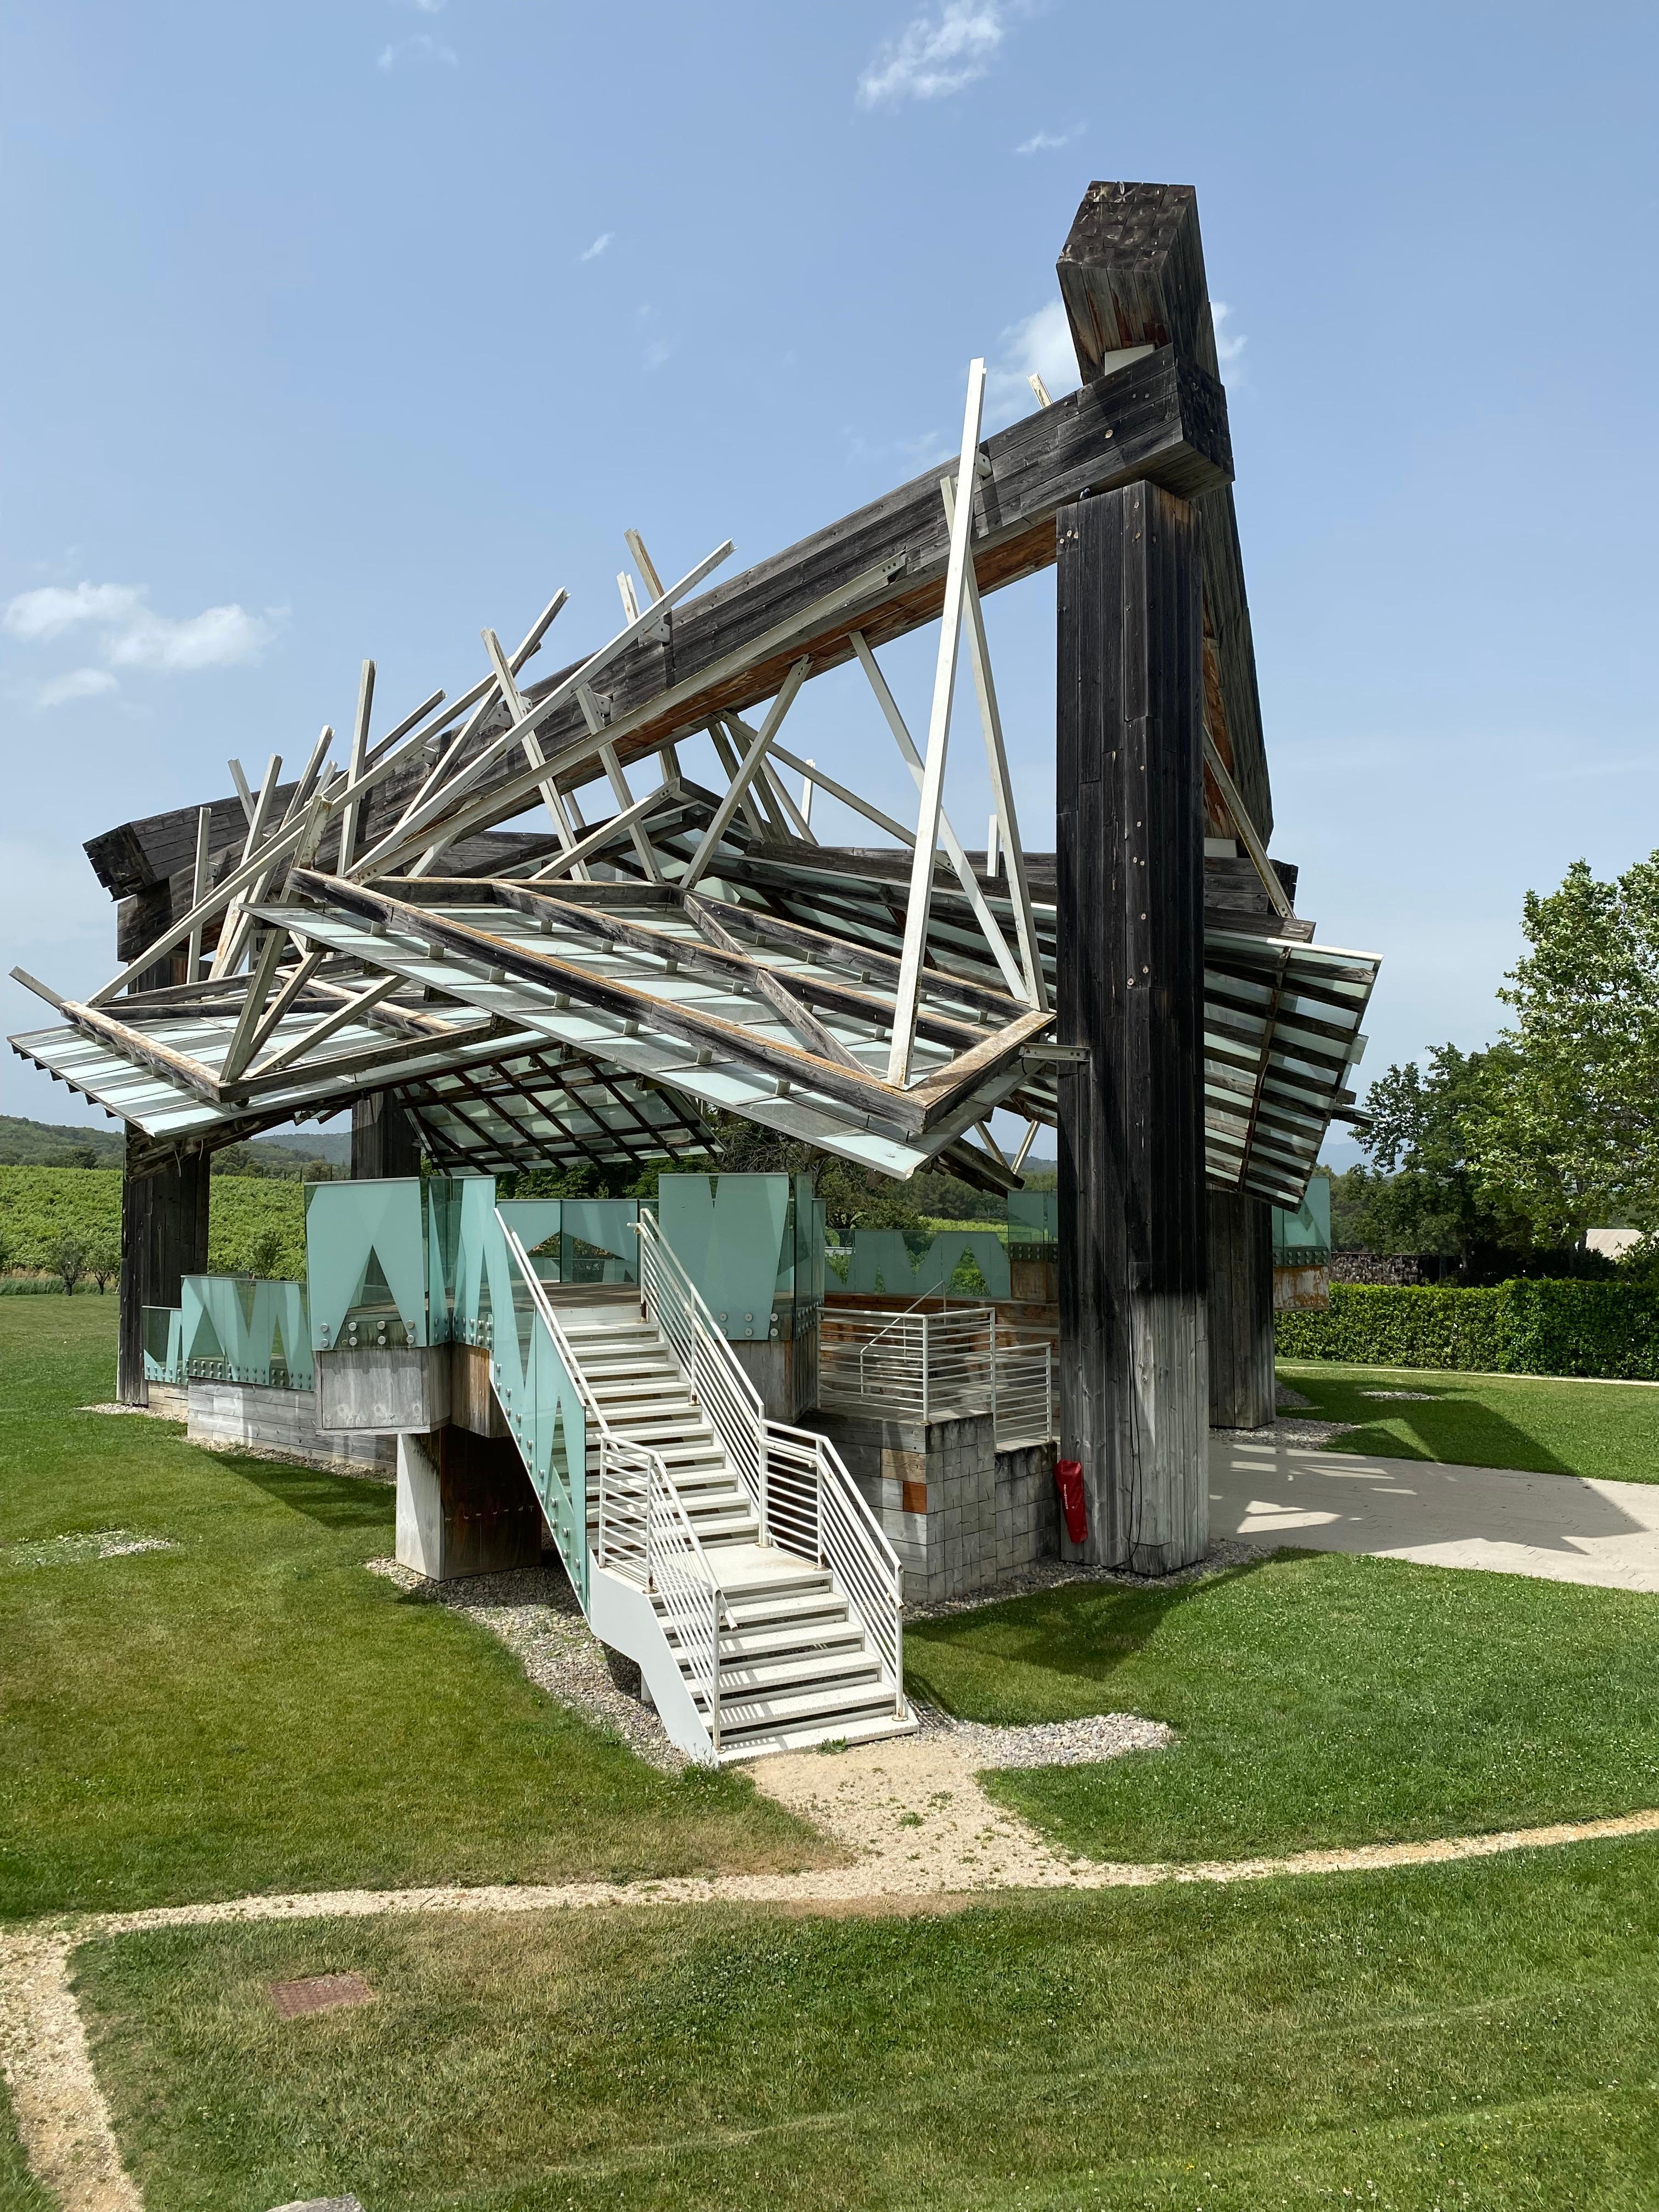 Wie ein experimentelles Notenblatt gestaltet, zieht der Musikpavillon von Frank O. Gehry die Blicke auf sich_Copyright Ralf Nestmeyer